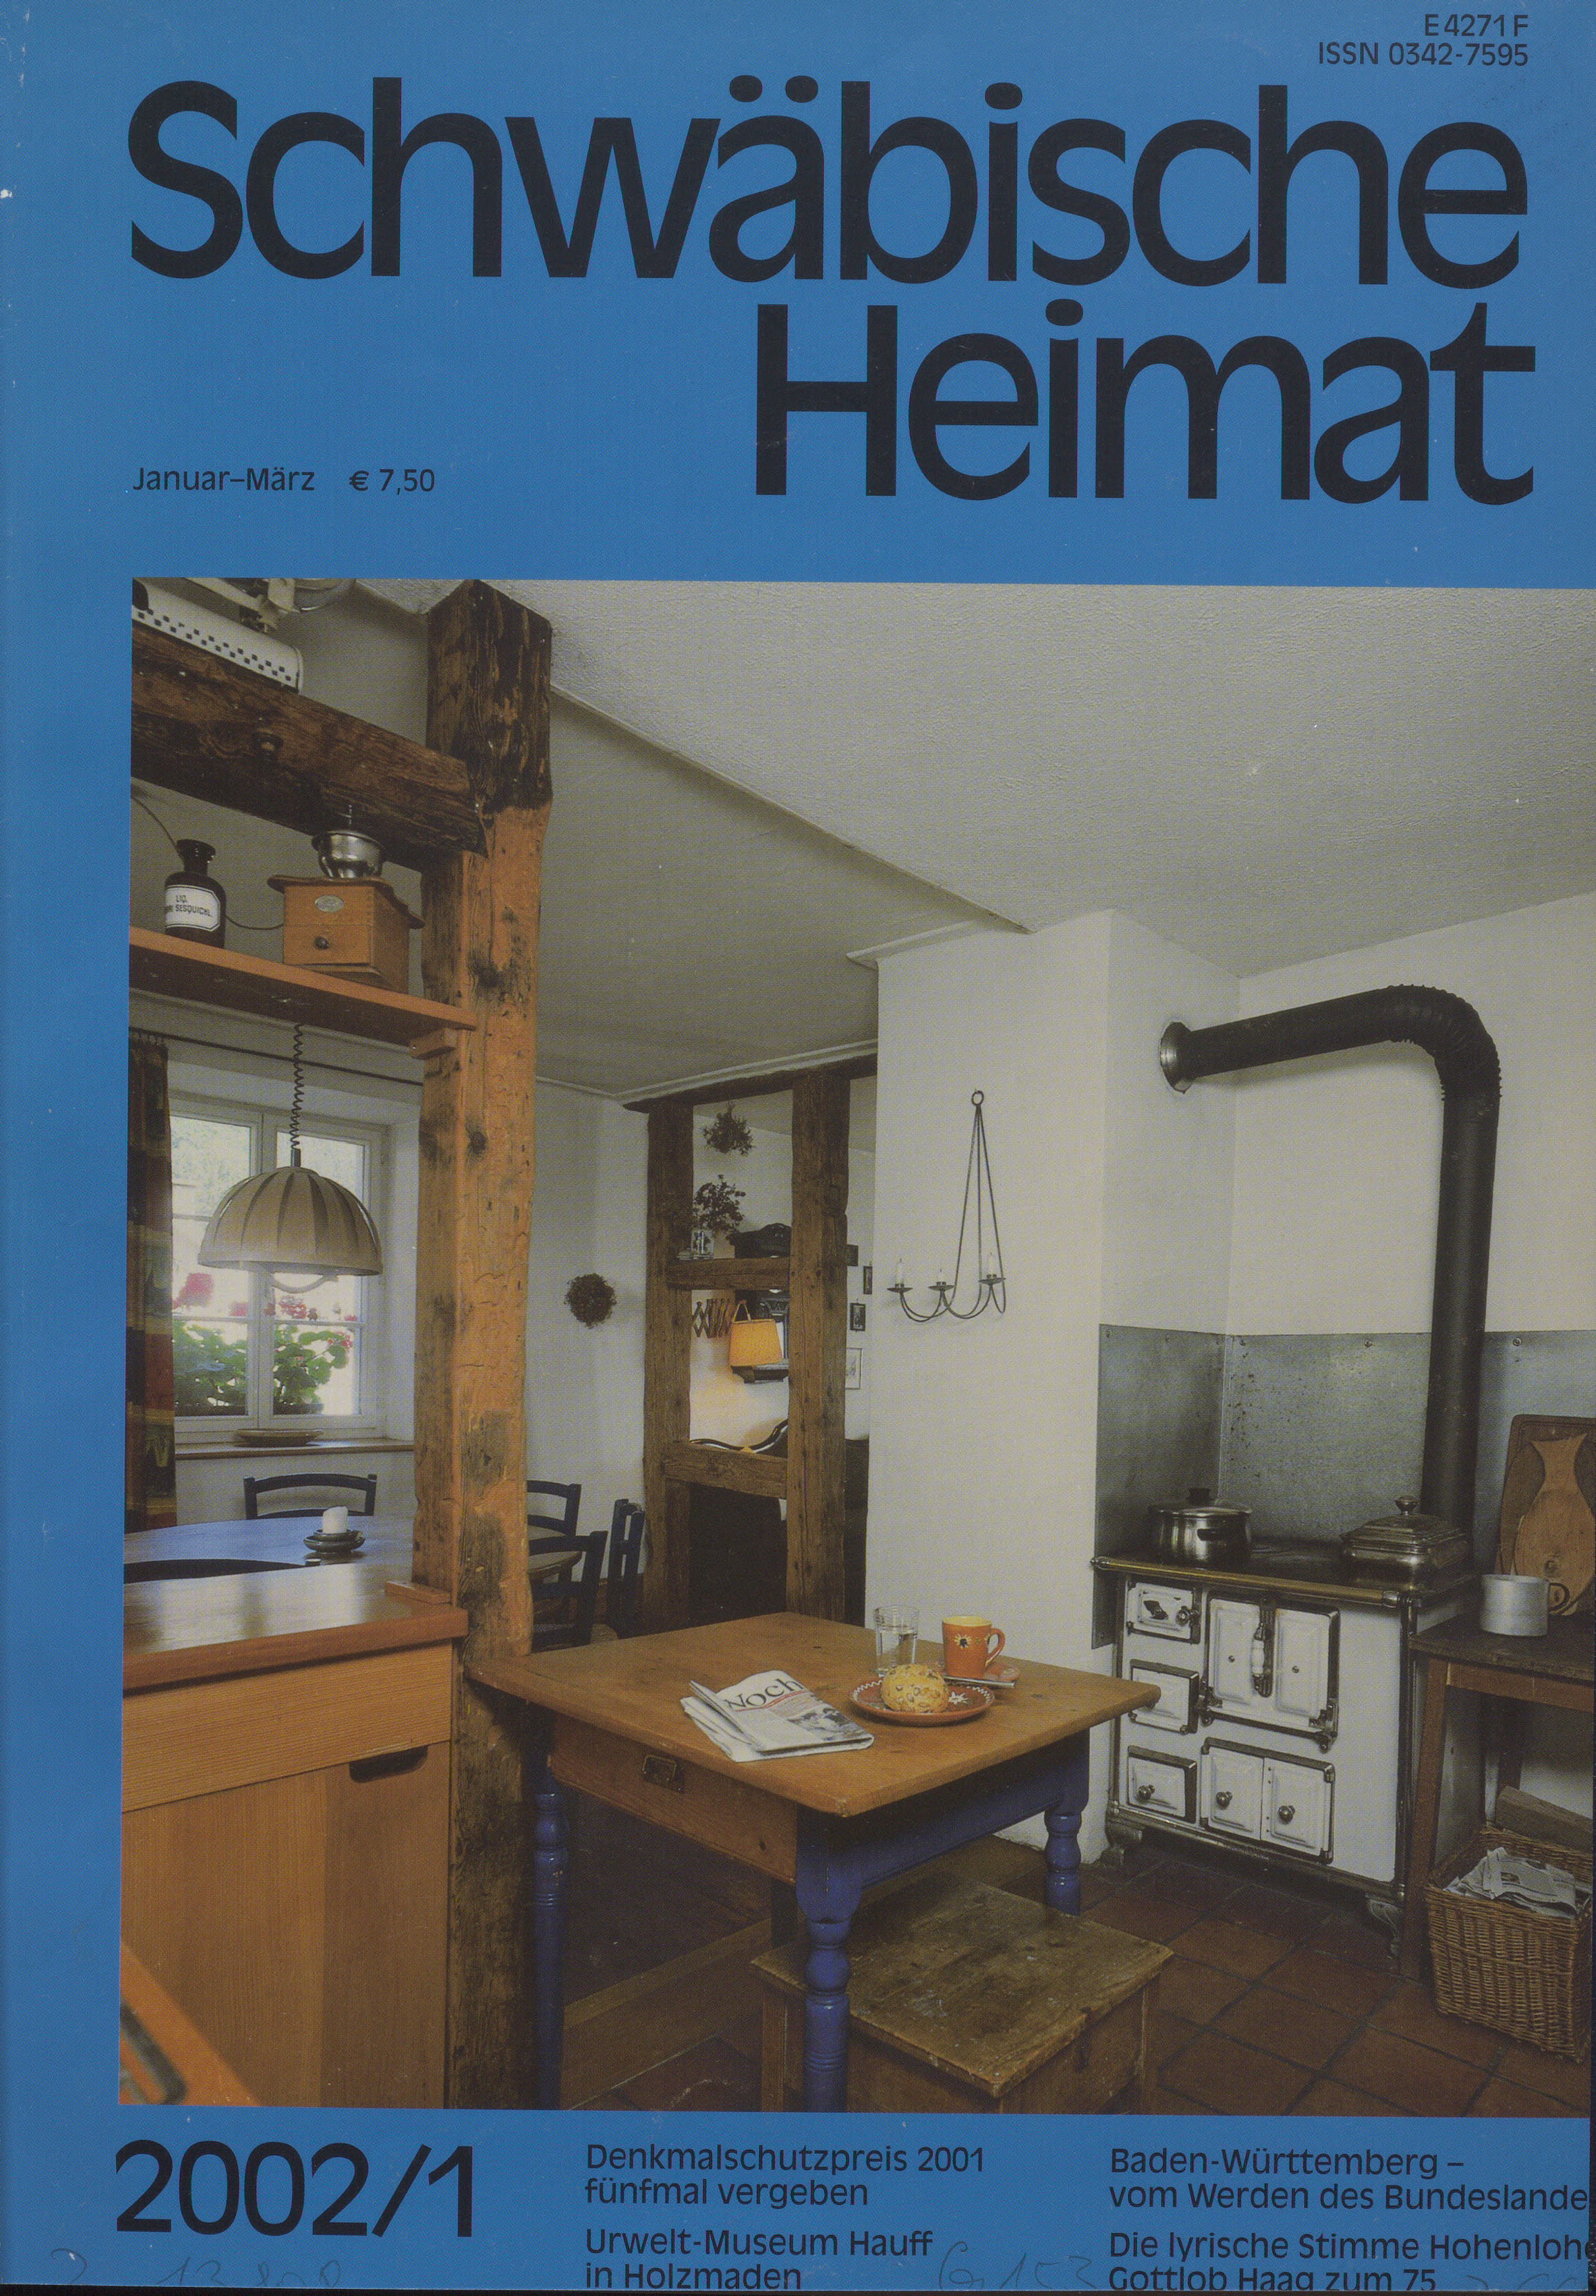                     Ansehen Bd. 53 Nr. 1 (2002): Schwäbische Heimat
                